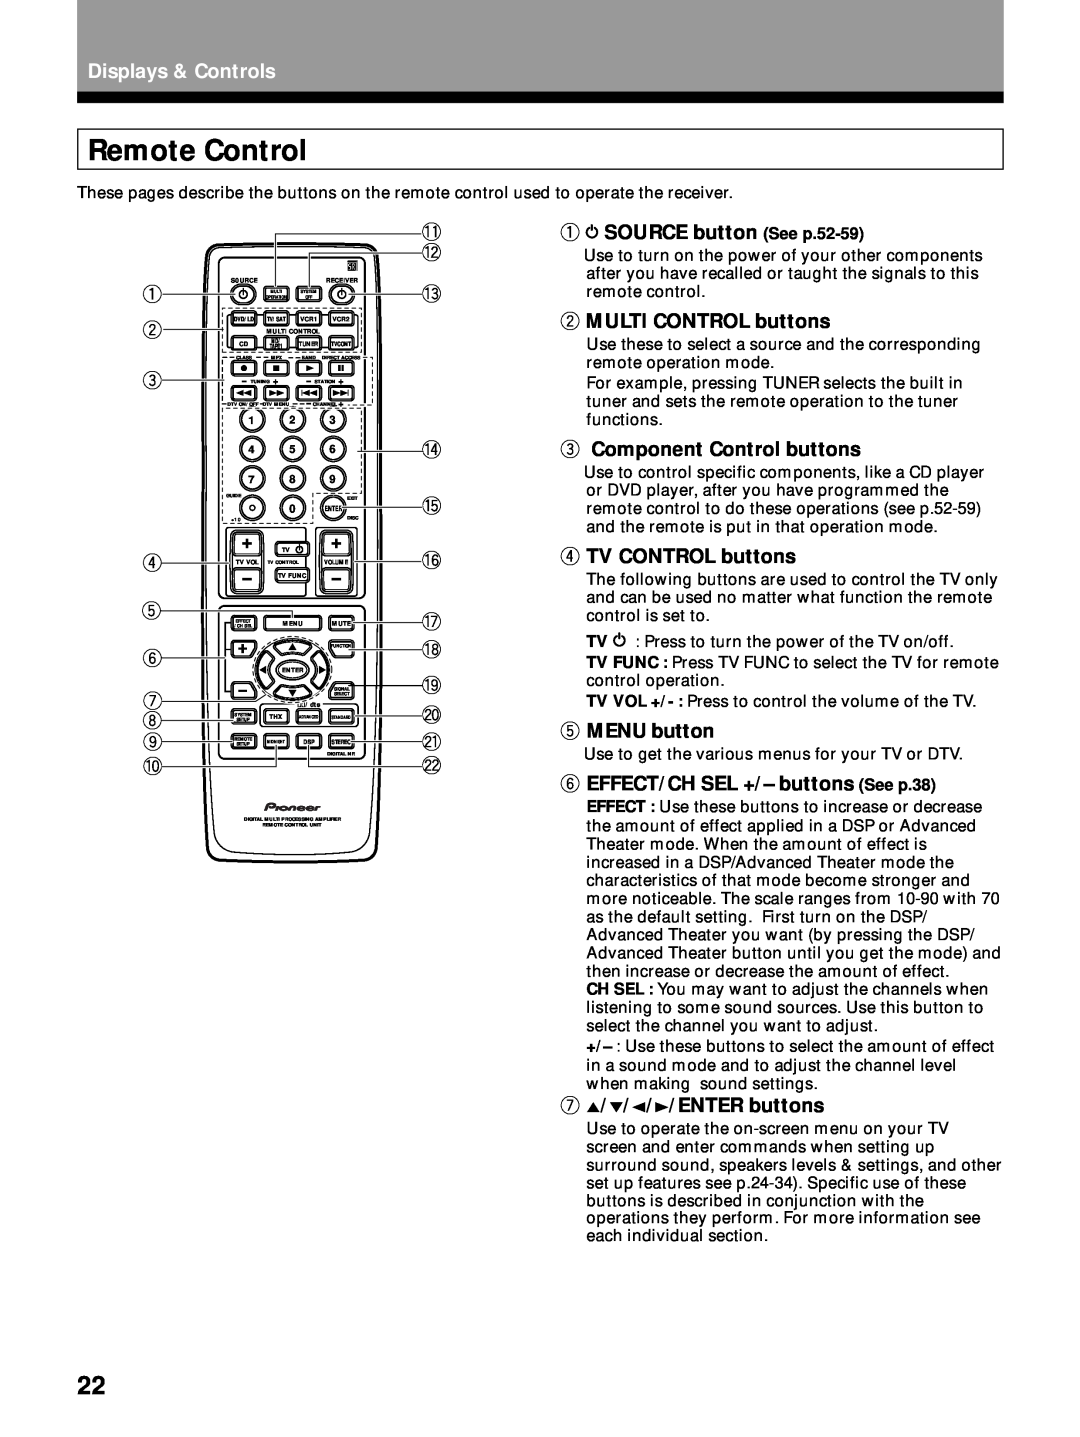 Pioneer VSX-26TX Remote Control, 1 2 3 4 5 6, SOURCE button See p.52-59, MULTI CONTROL buttons, Component Control buttons 